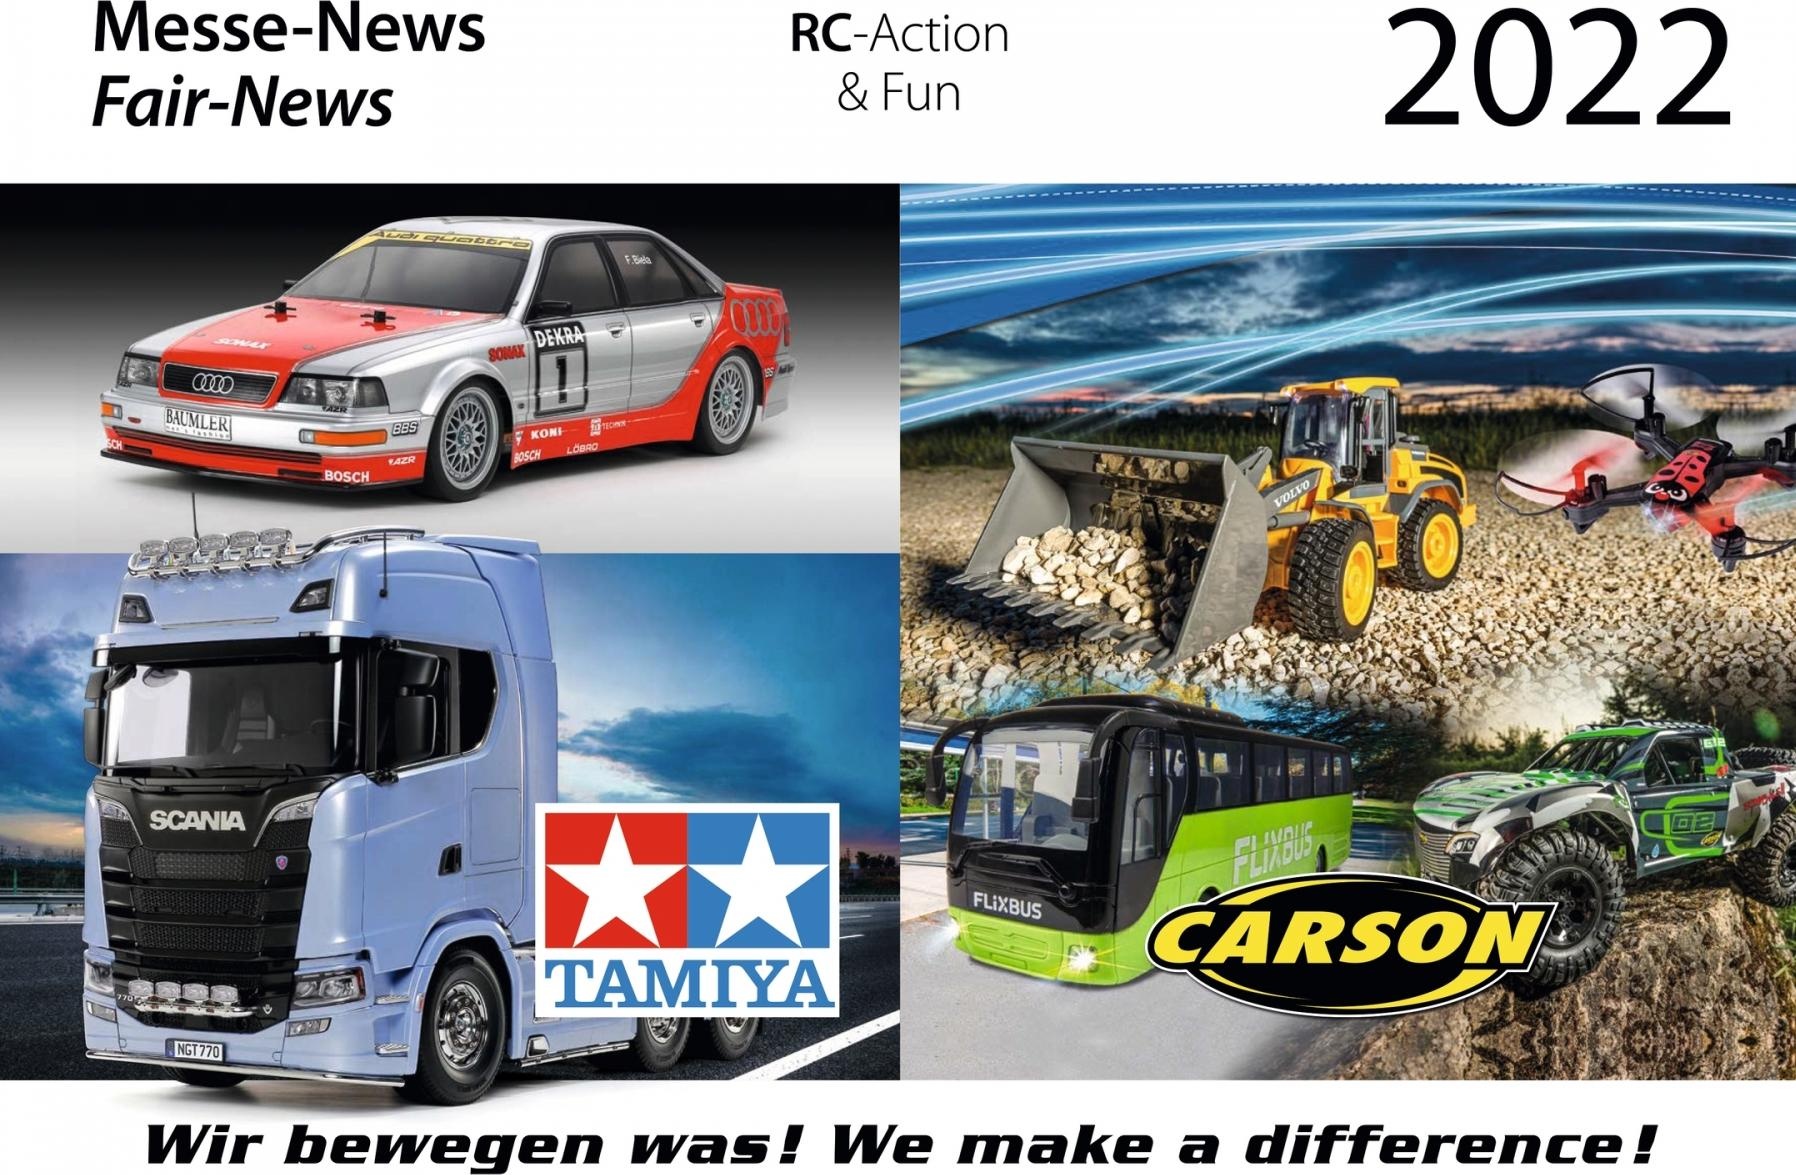 Carson TAMIYA-CARSON Toy Fair News 2022 DE/EN